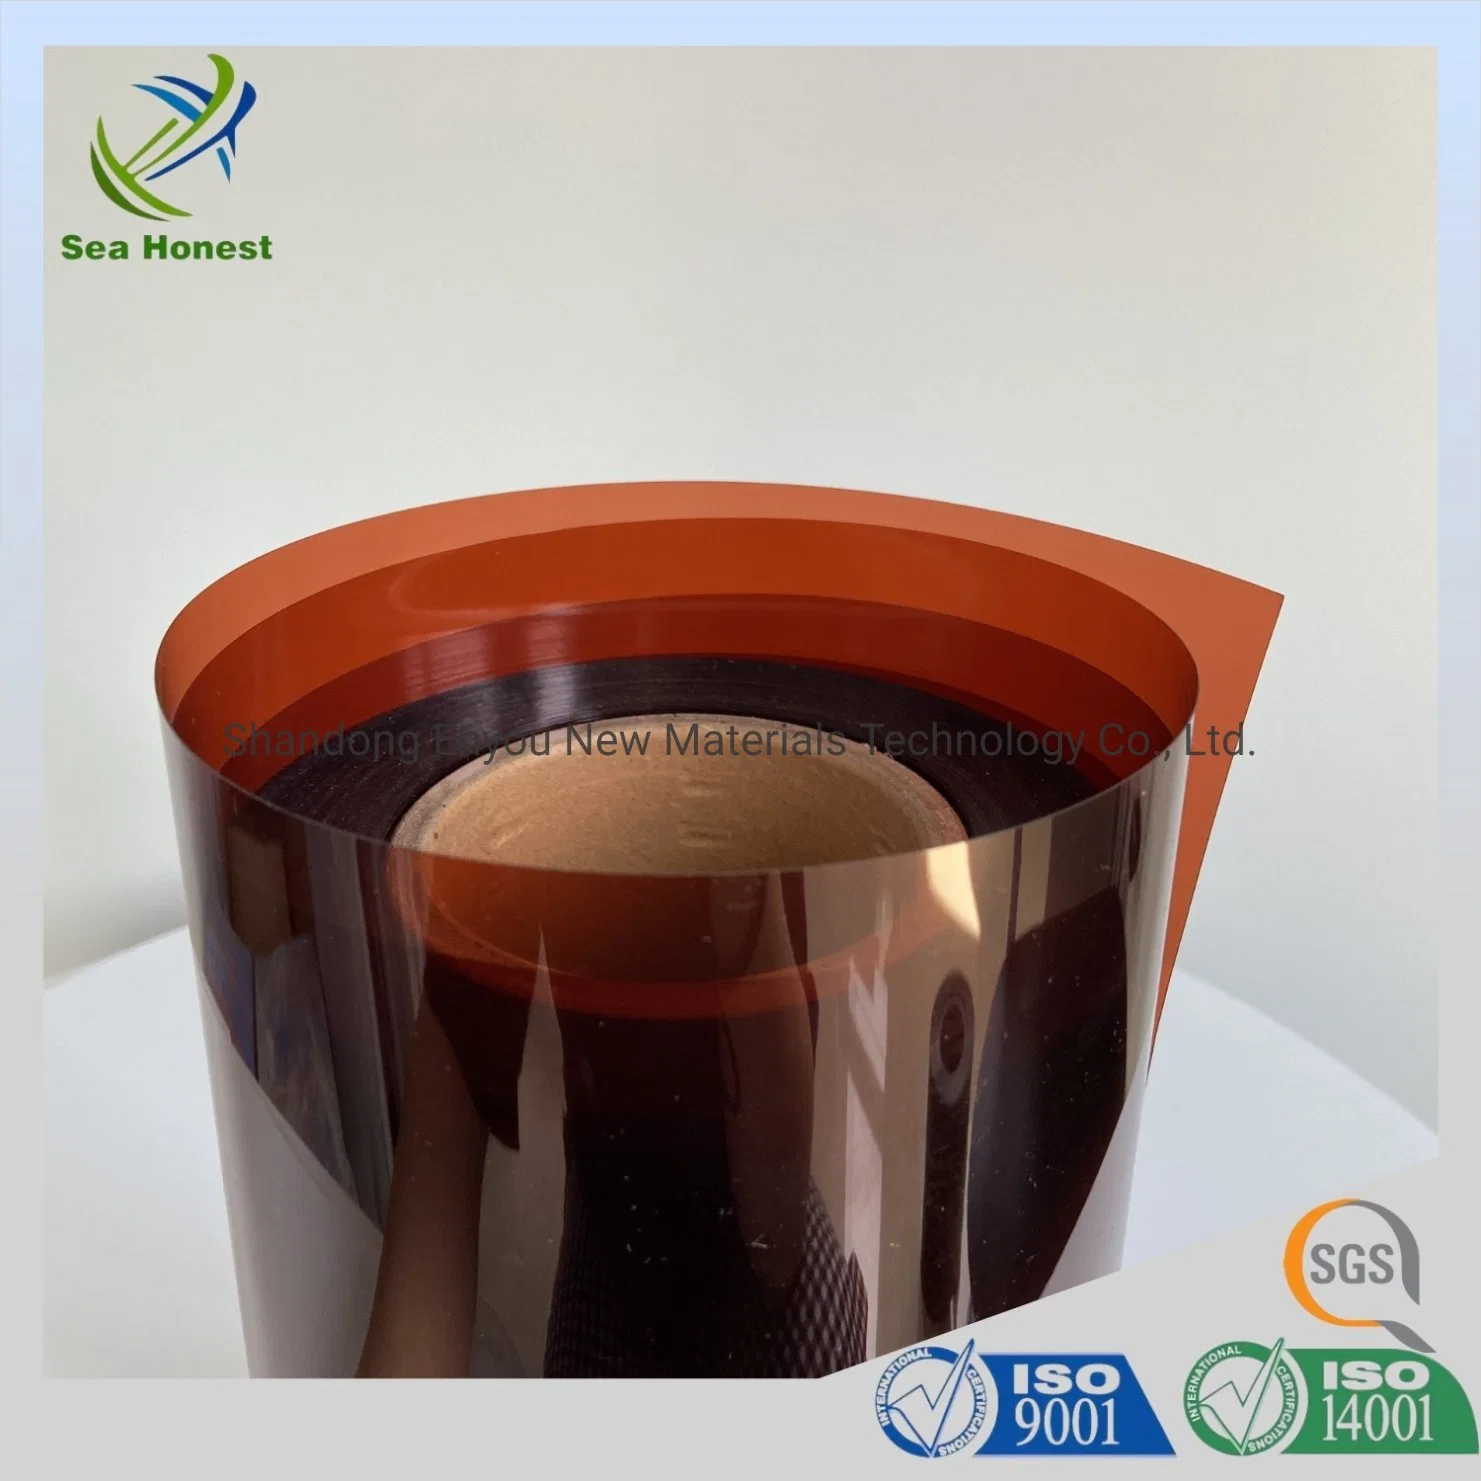 Blister Film Rigid PVC Film Amber Color for Pharmaceutical Packaging